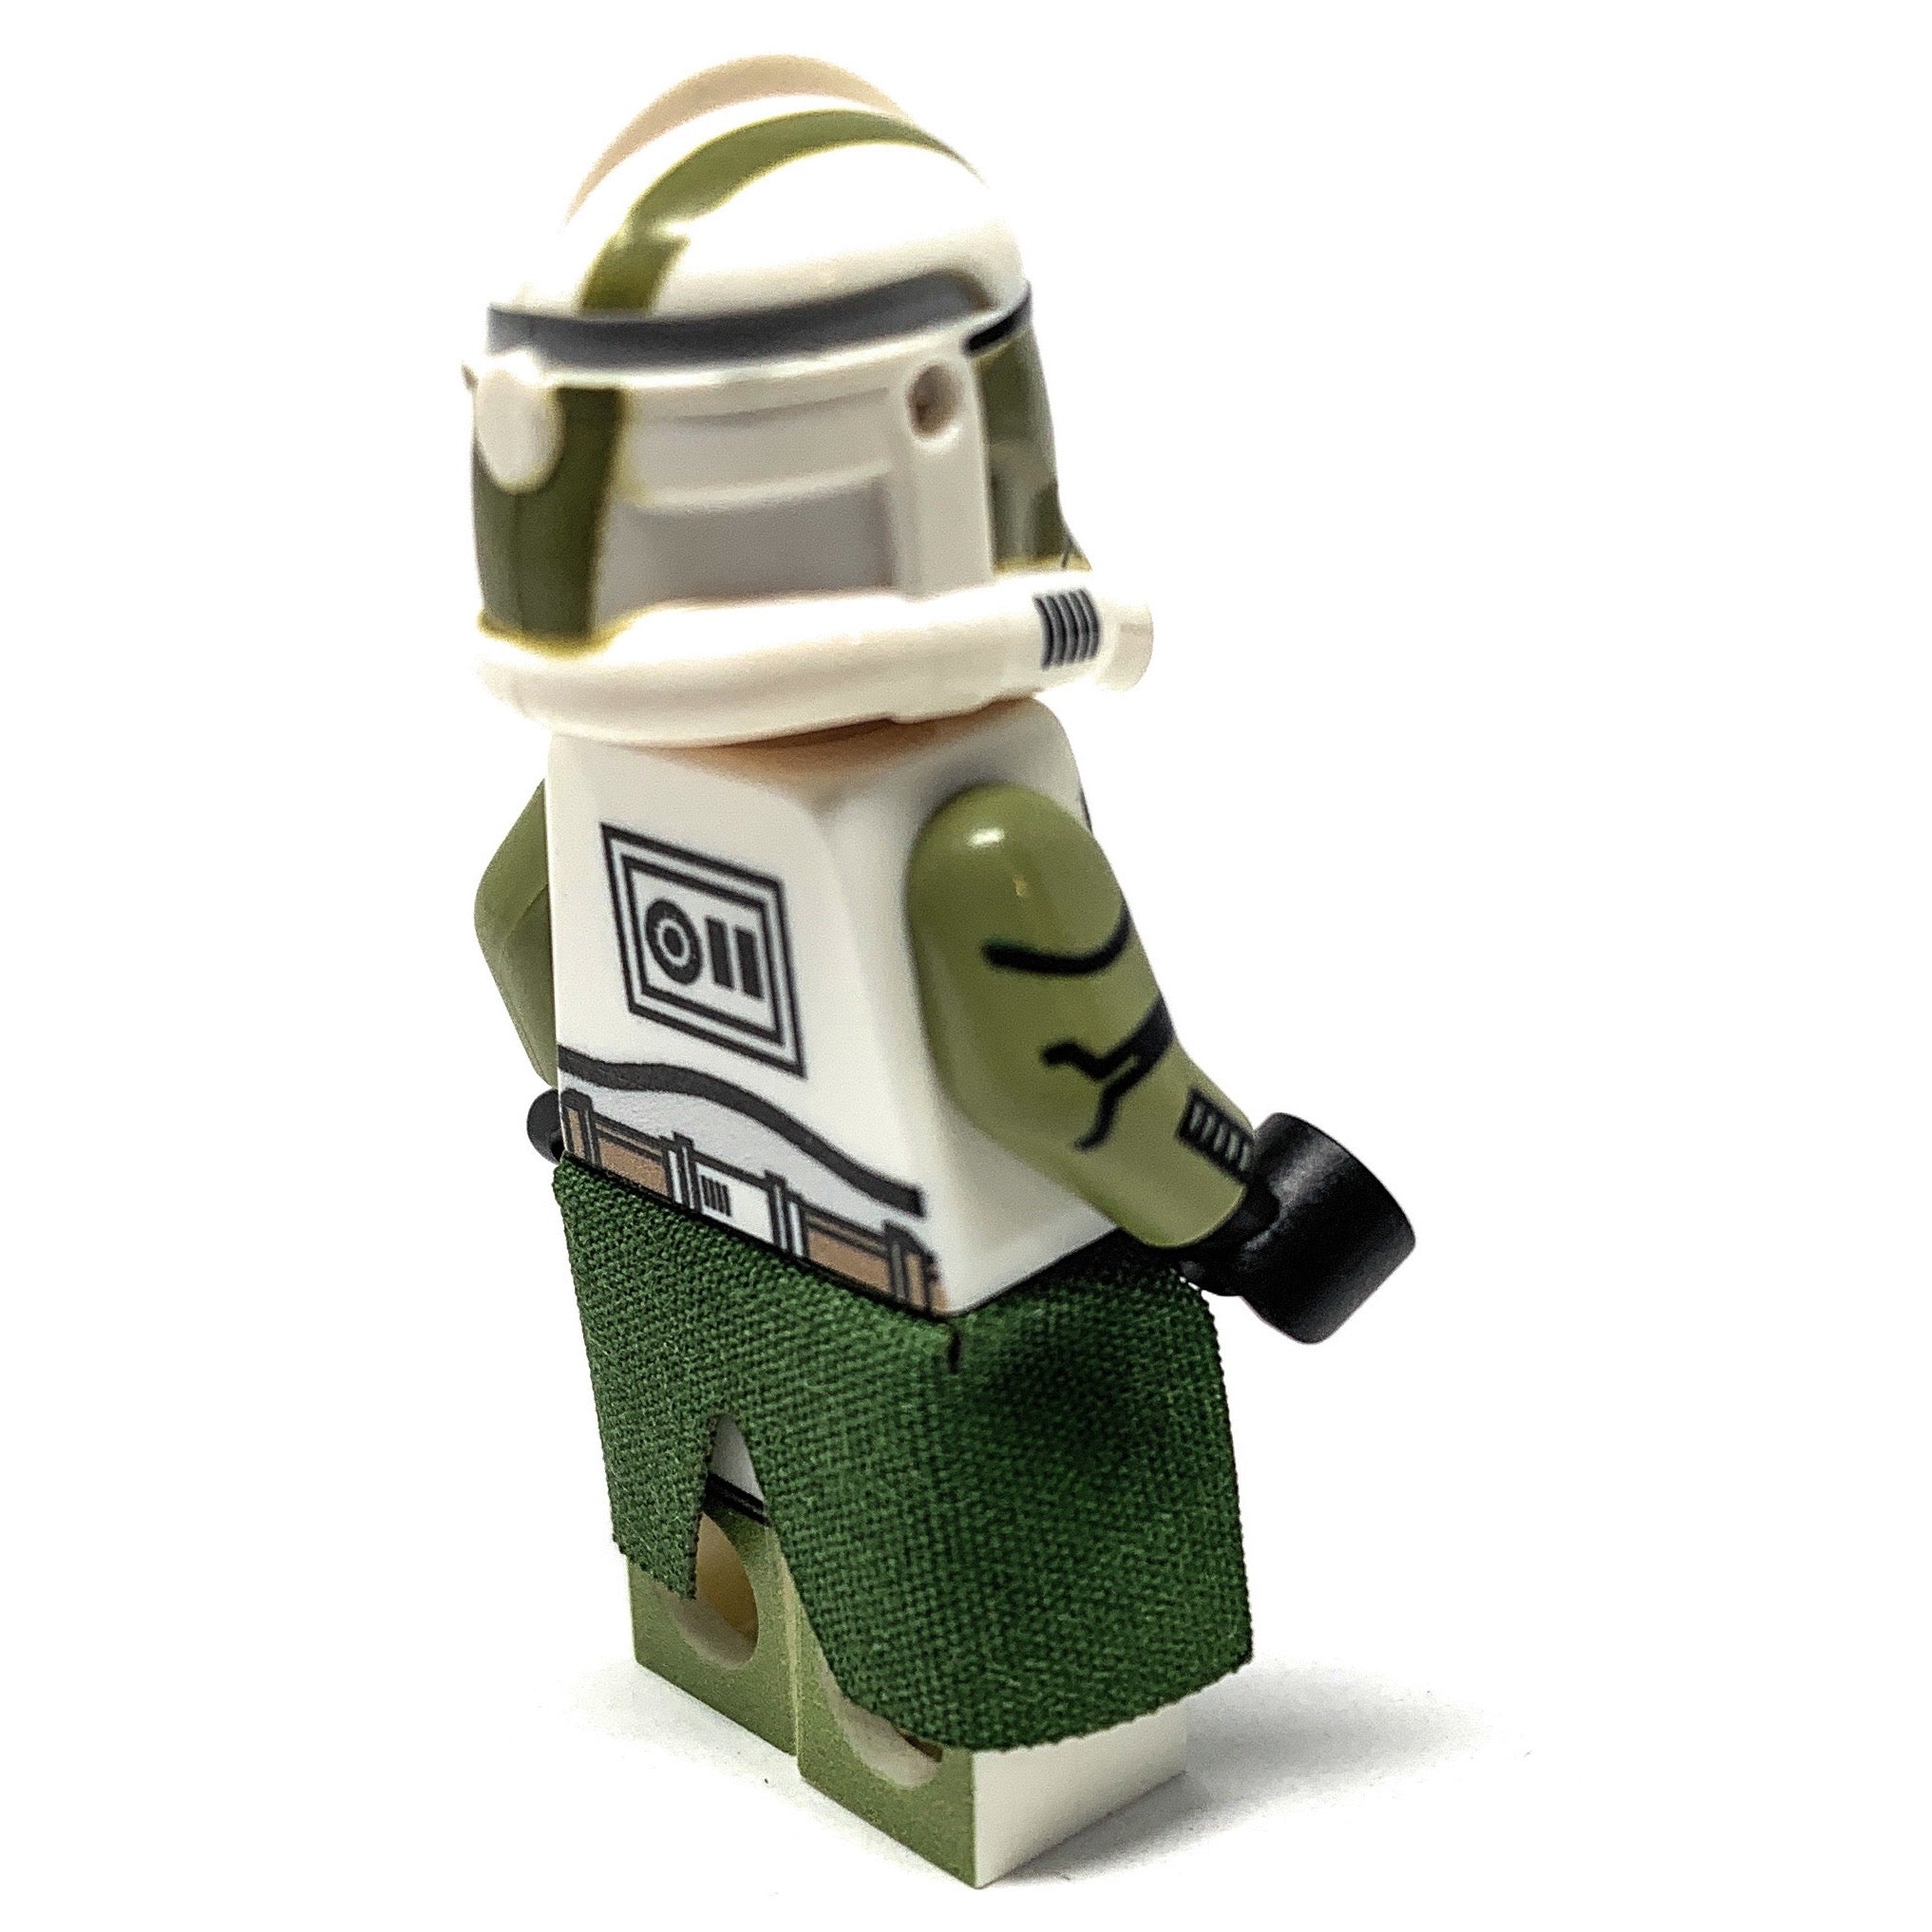 Doom Squad Clone Trooper - Custom Star Wars Minifig